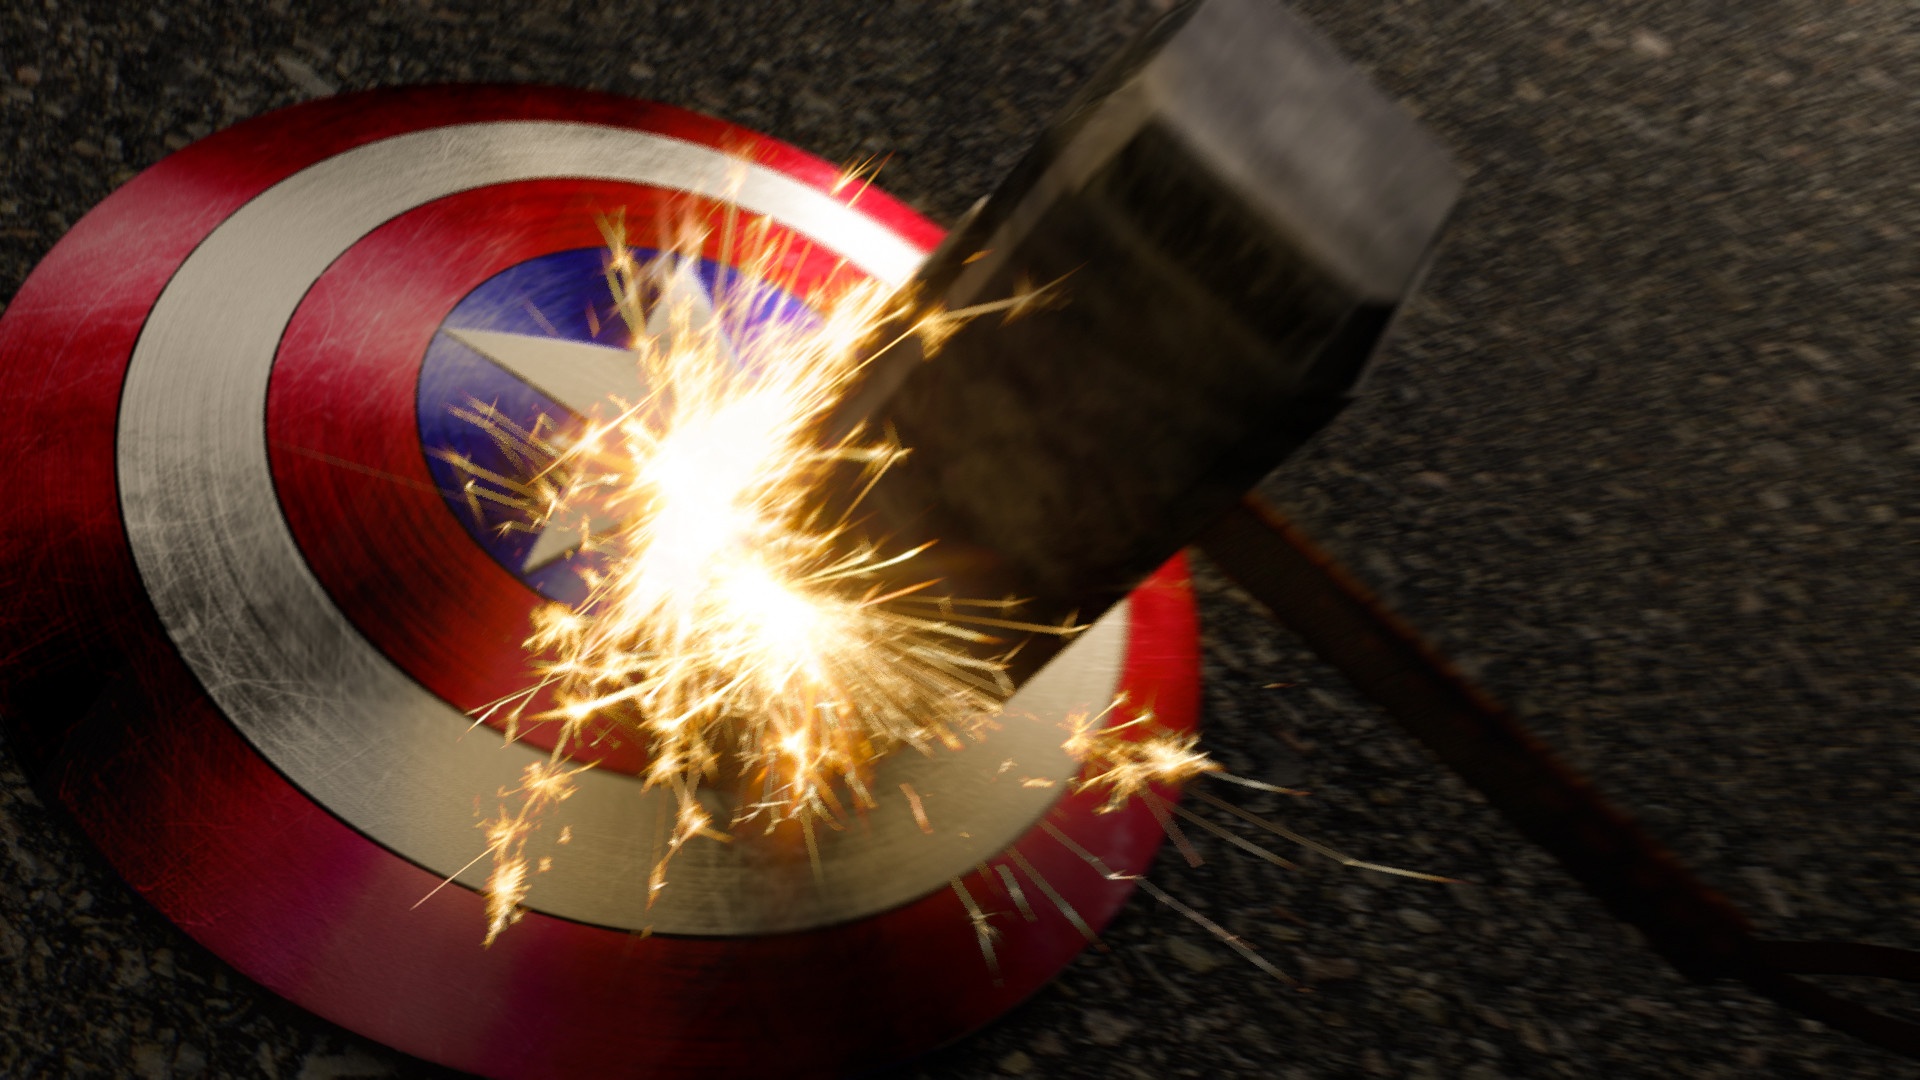 Apurv Chatterjee - Captain America Shield Vs Thor's Hammer Scene - HD Wallpaper 